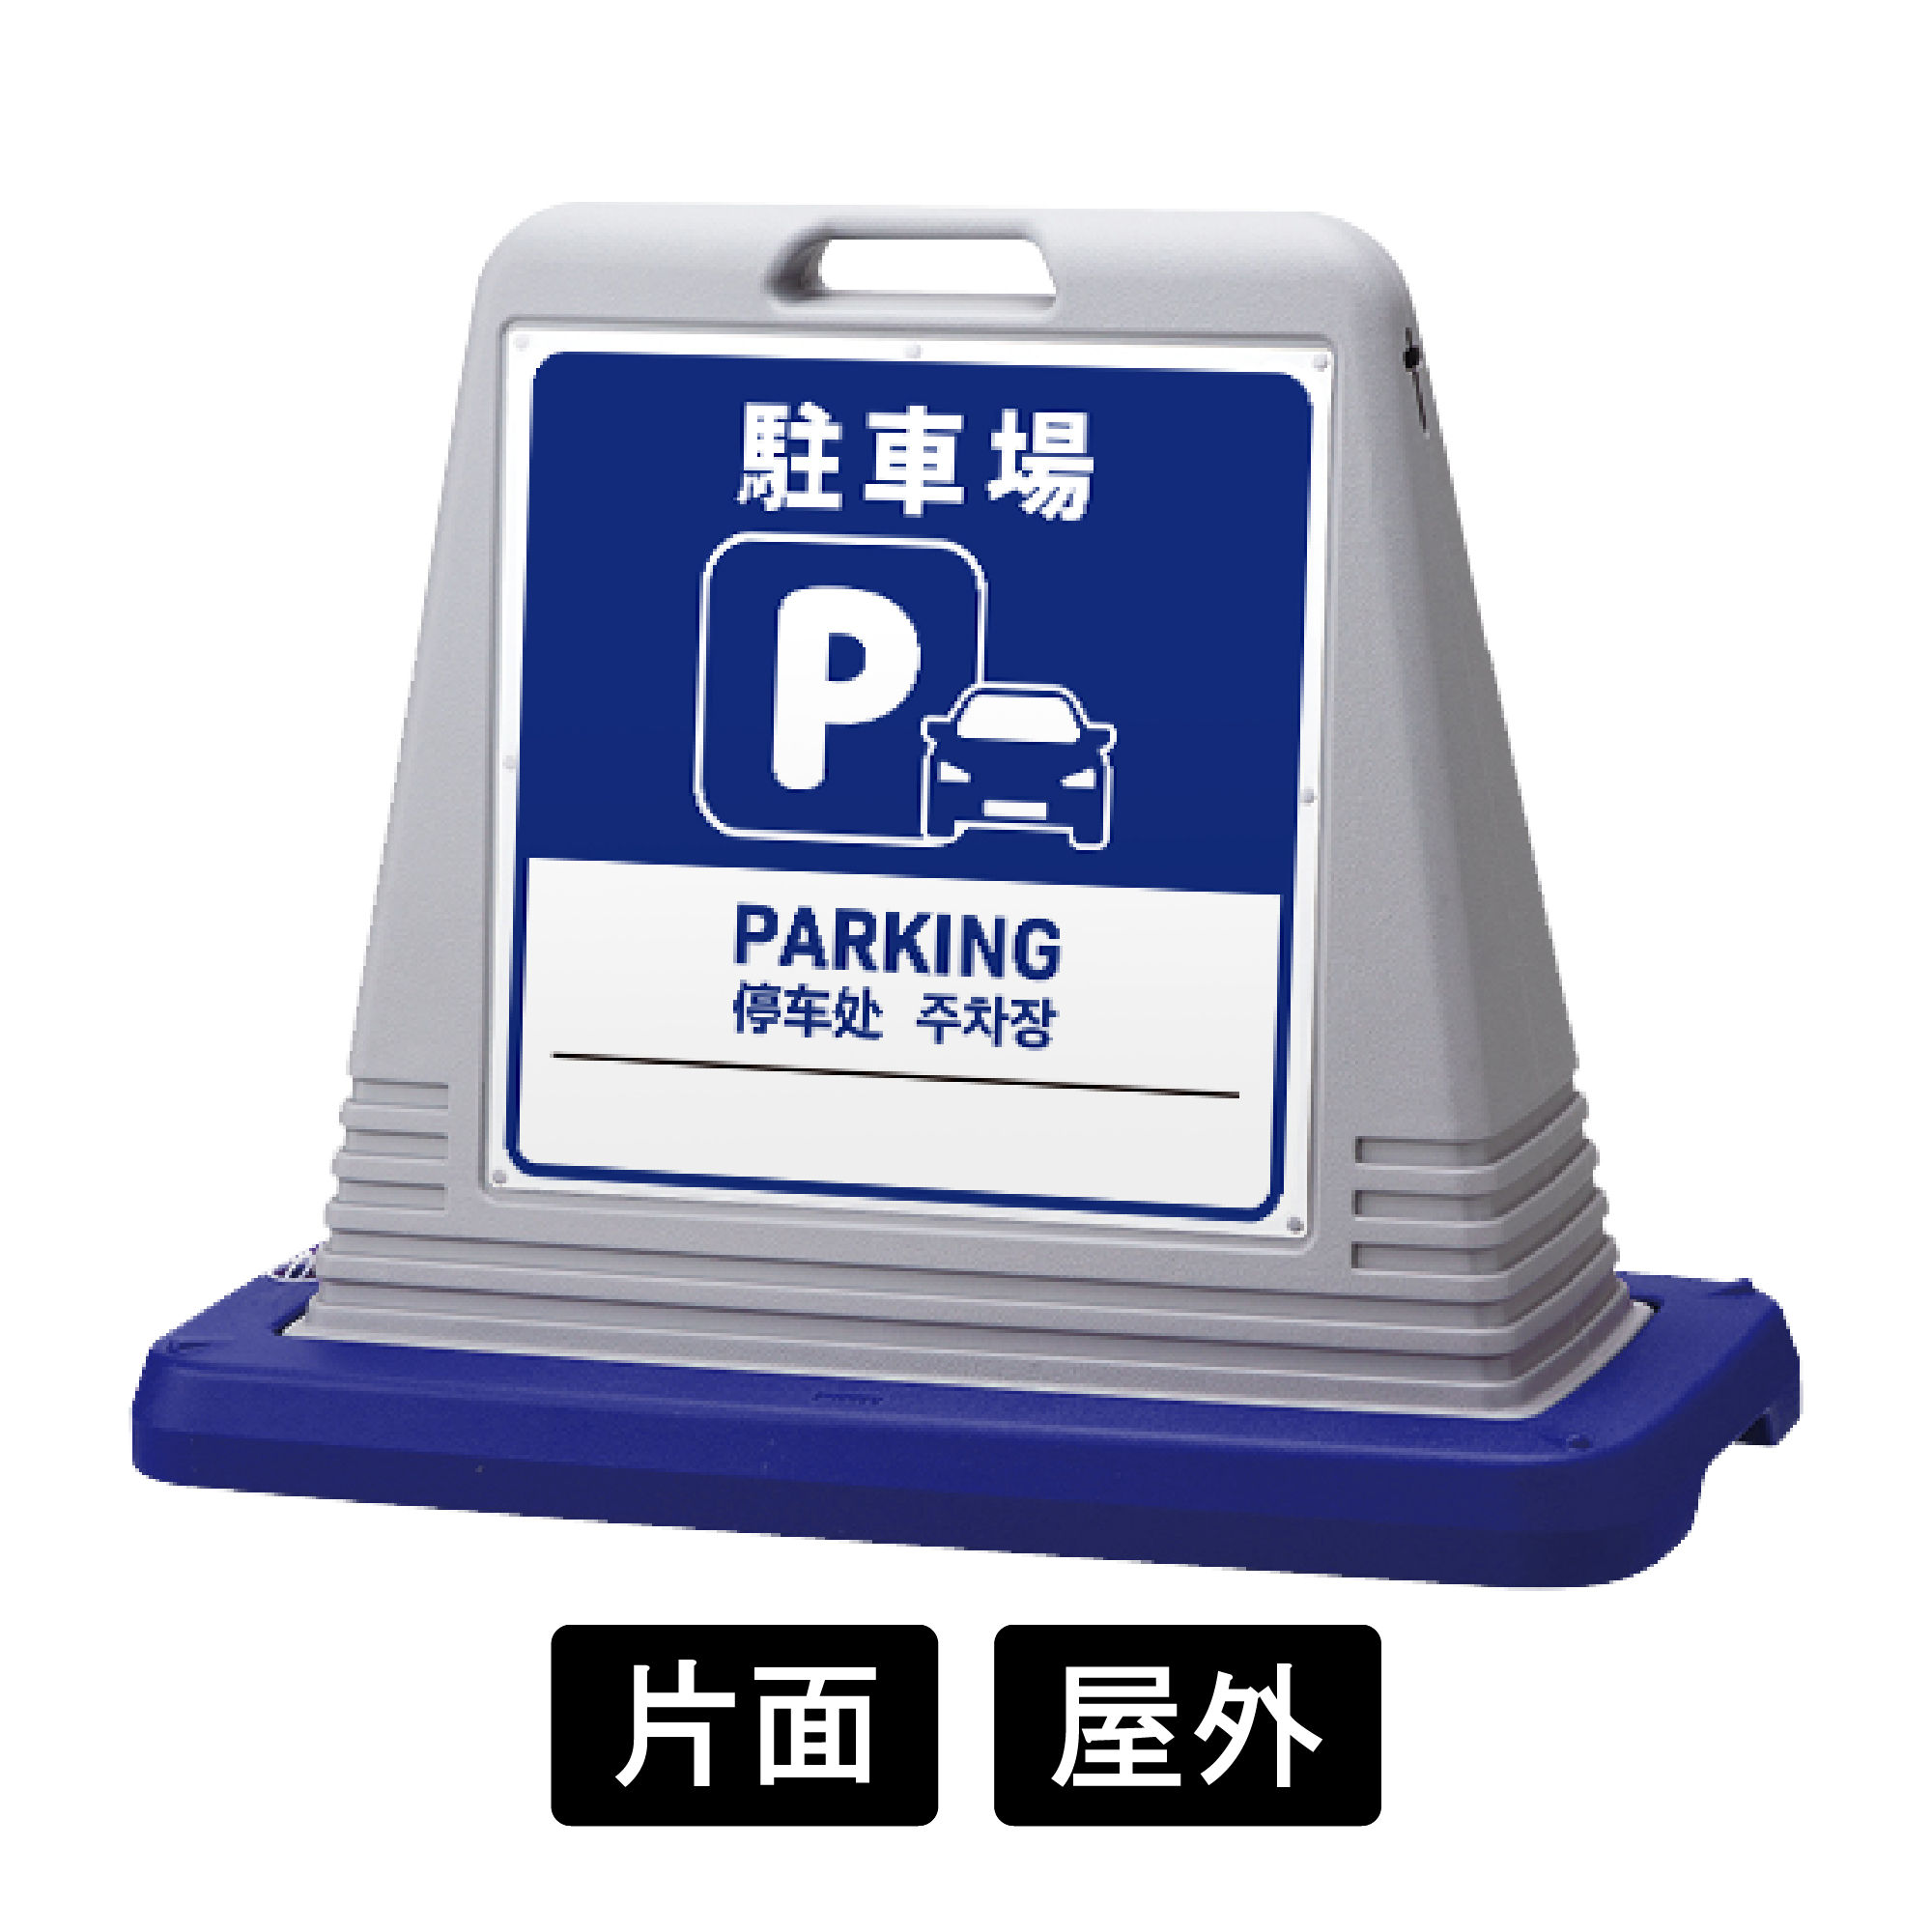 サインキューブ 「駐車場」 片面表示 グレー SignWebオリジナル 多言語 ユニバーサルデザイン